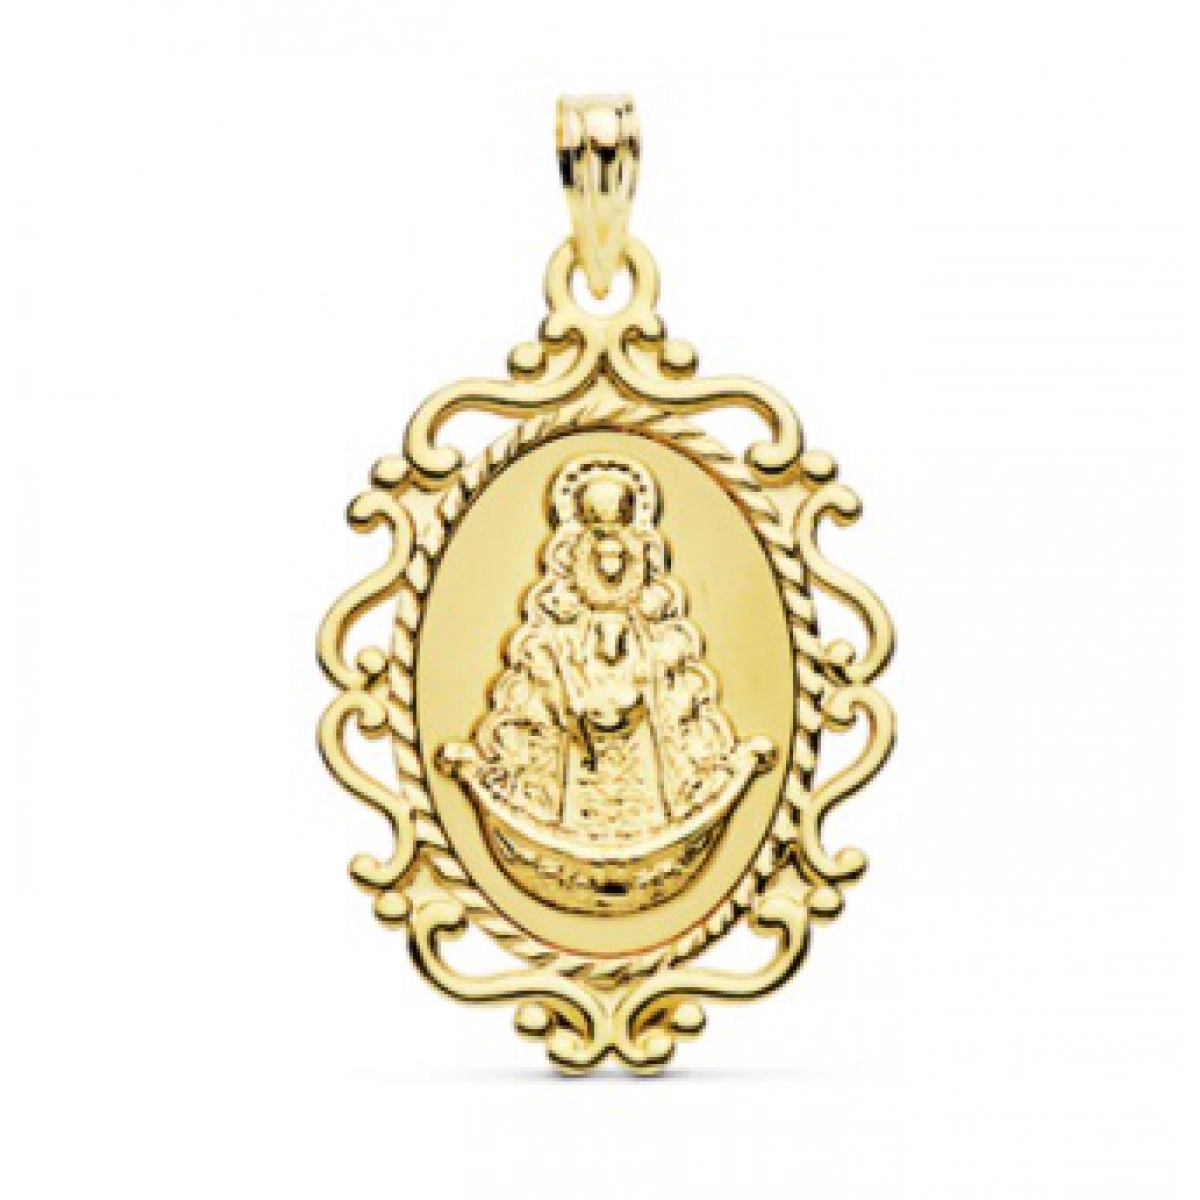 Collar medalla de oro virgen del Rocio  - Artesanal - alt1682